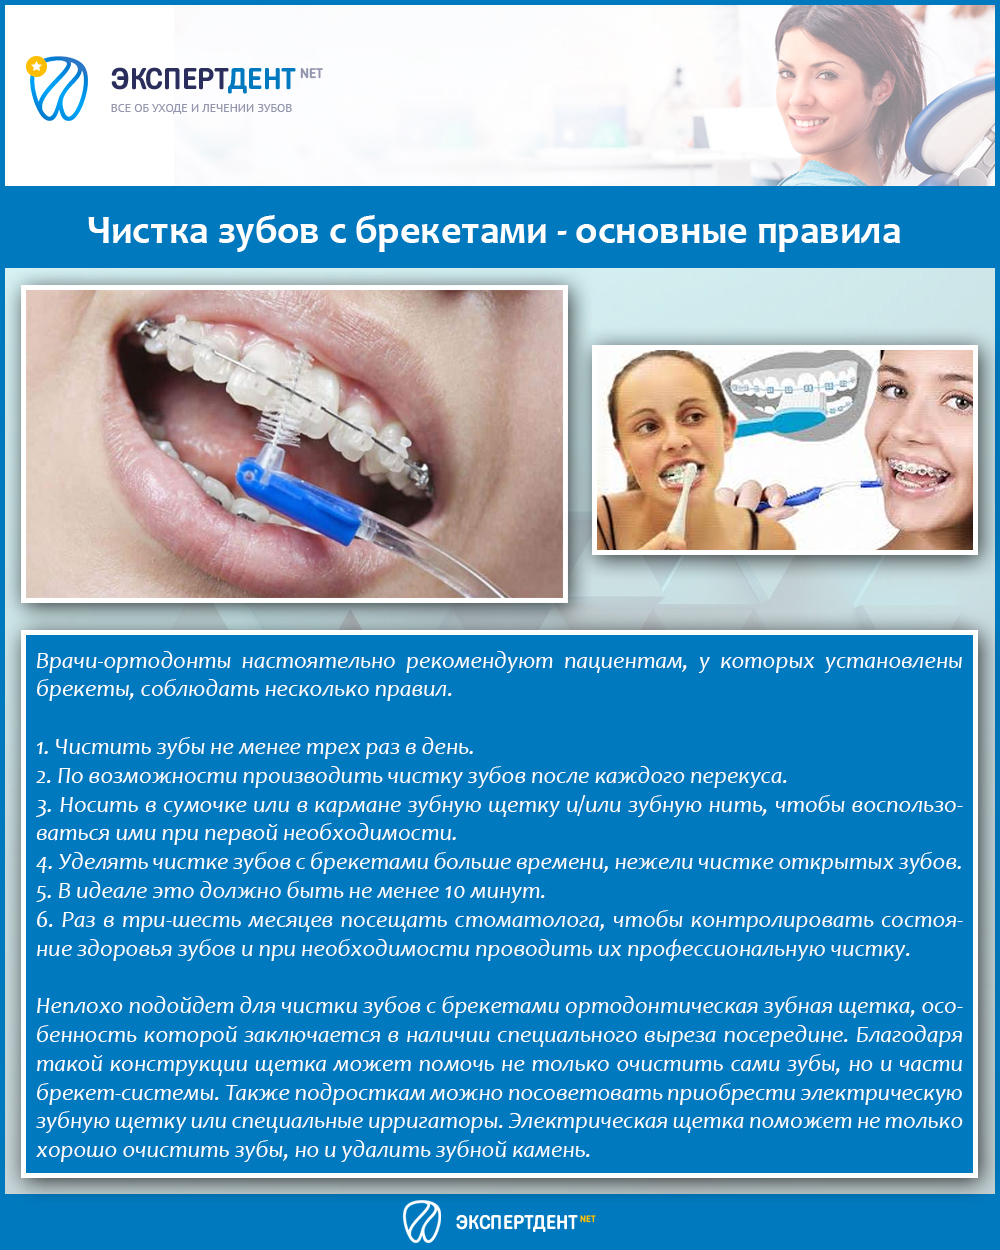 Можно чистить зубы при посте. Профессиональная чистка зубов. Чистка зубов с брекет системой. Памятка пациенту с брекет системой. Методы чистки зубов с брекет системой.